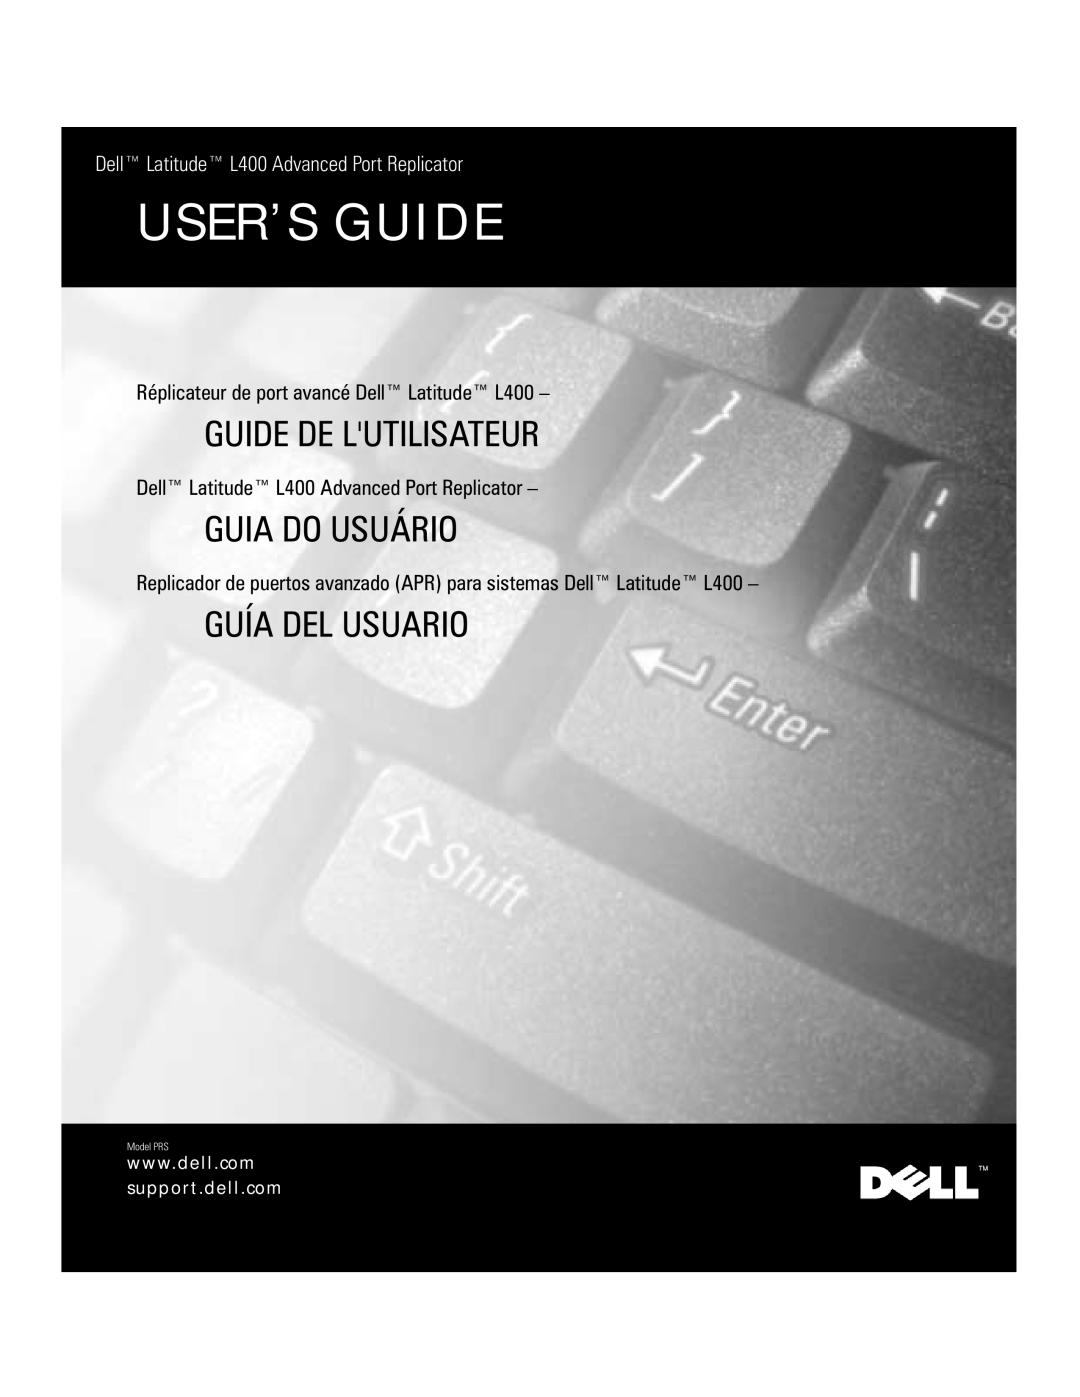 Dell service manual Dell Latitude L400 